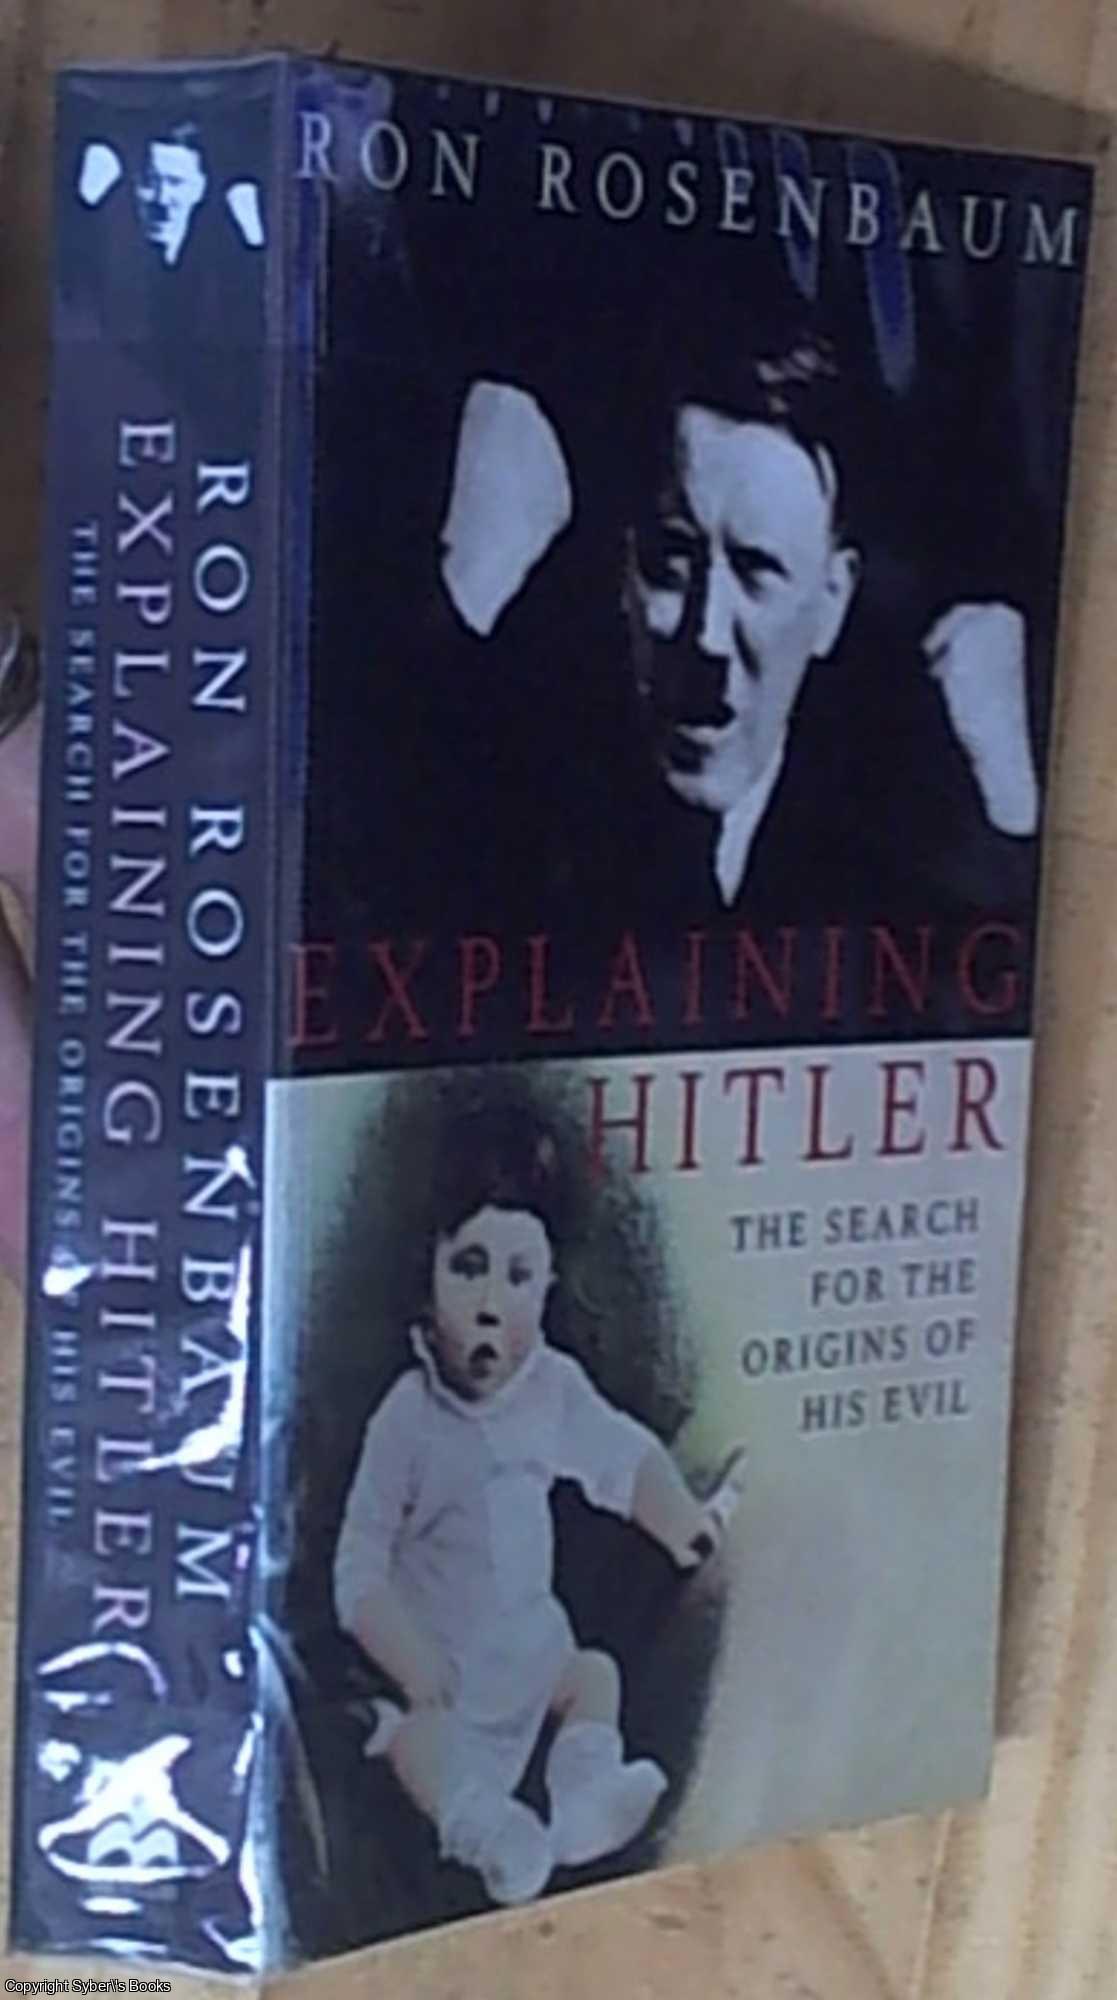 Rosenbaum, Ron - Explaining Hitler; The Search for the Origins of His Evil